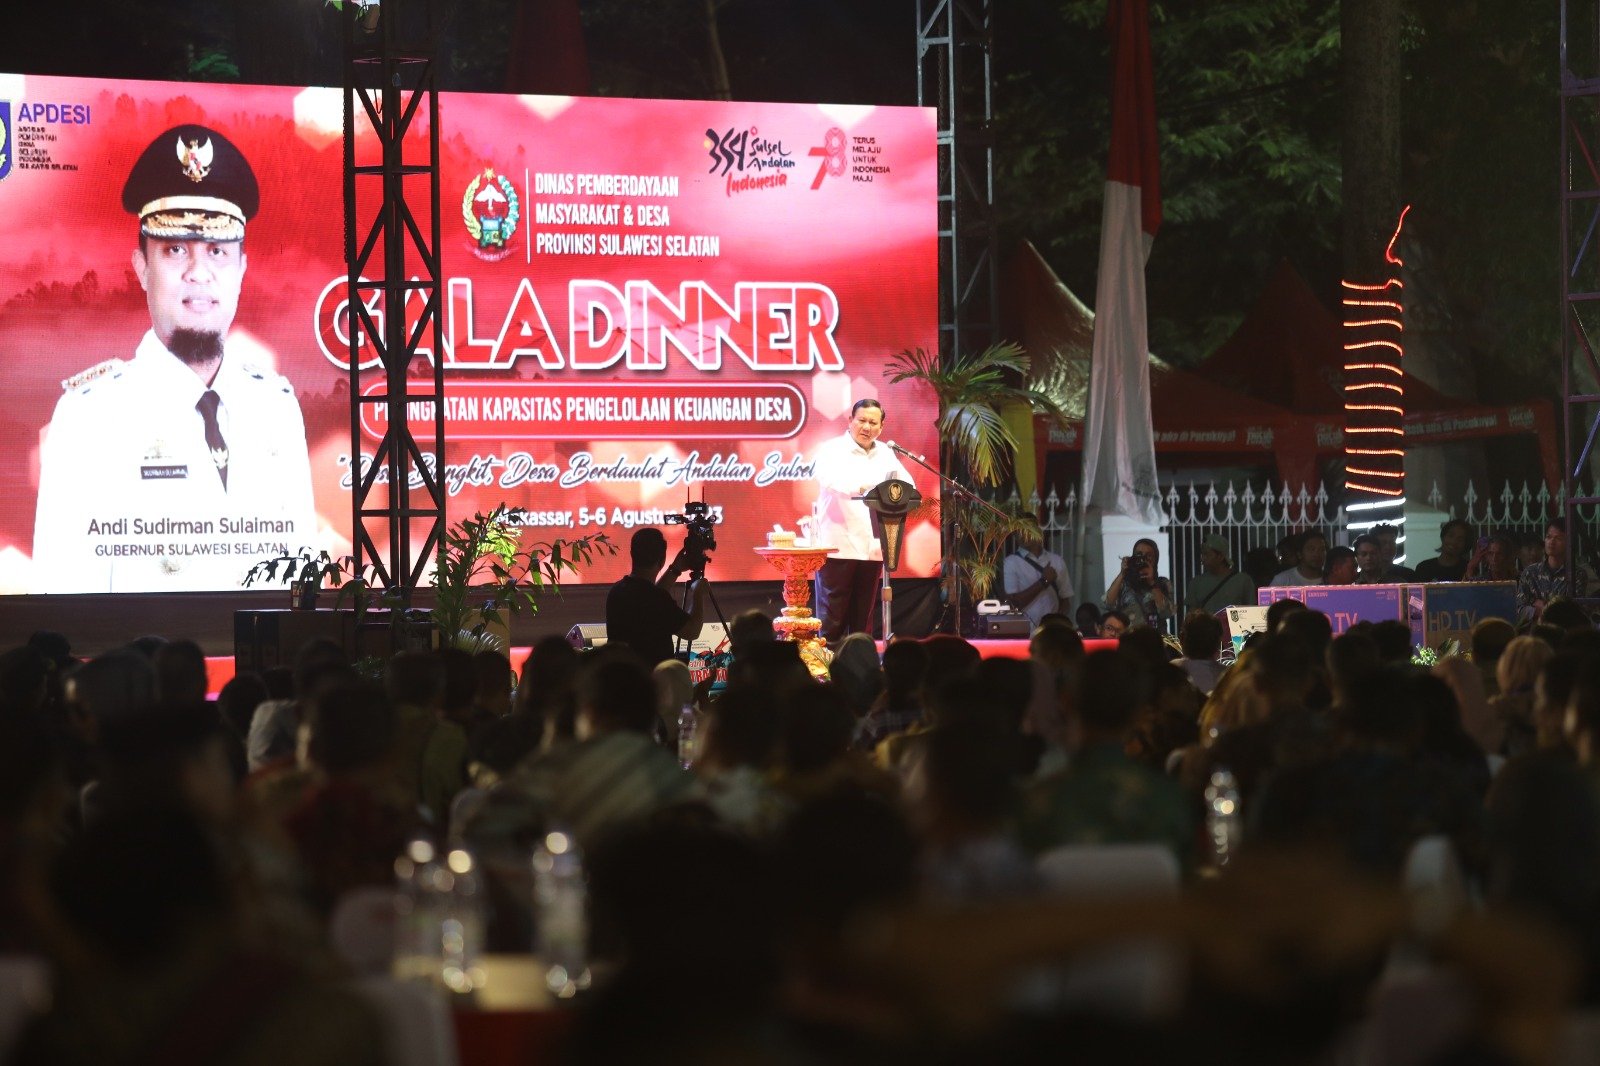 Prabowo berpidato di acara Gala Dinner di Sulsel (Sinpo.id/Tim Media)